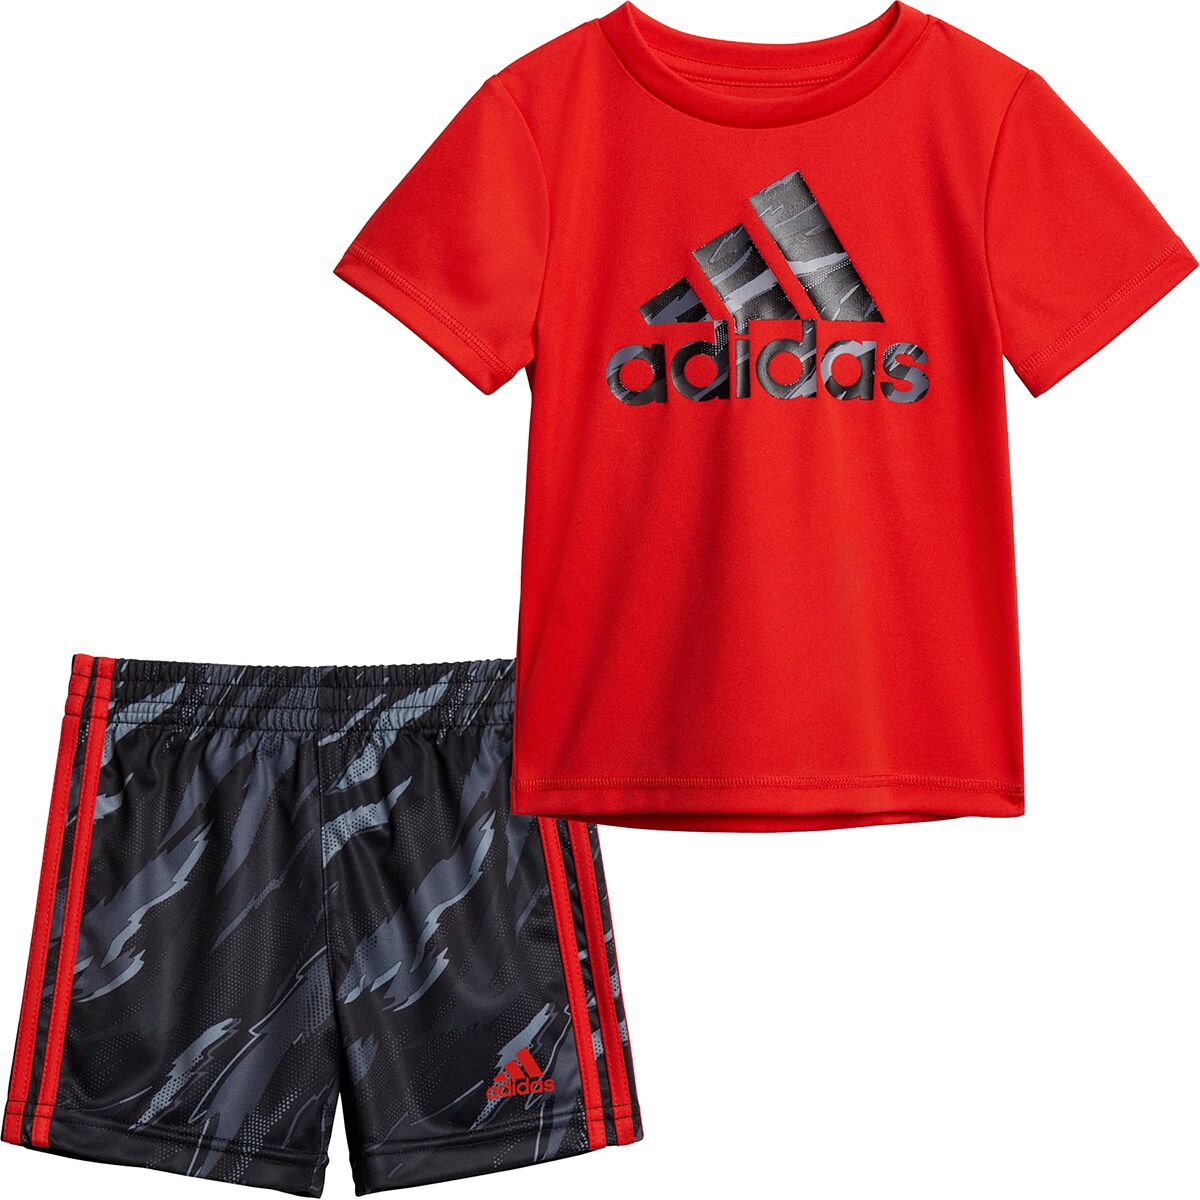 Adidas Tiger Camo Short Set - Toddler Boys'